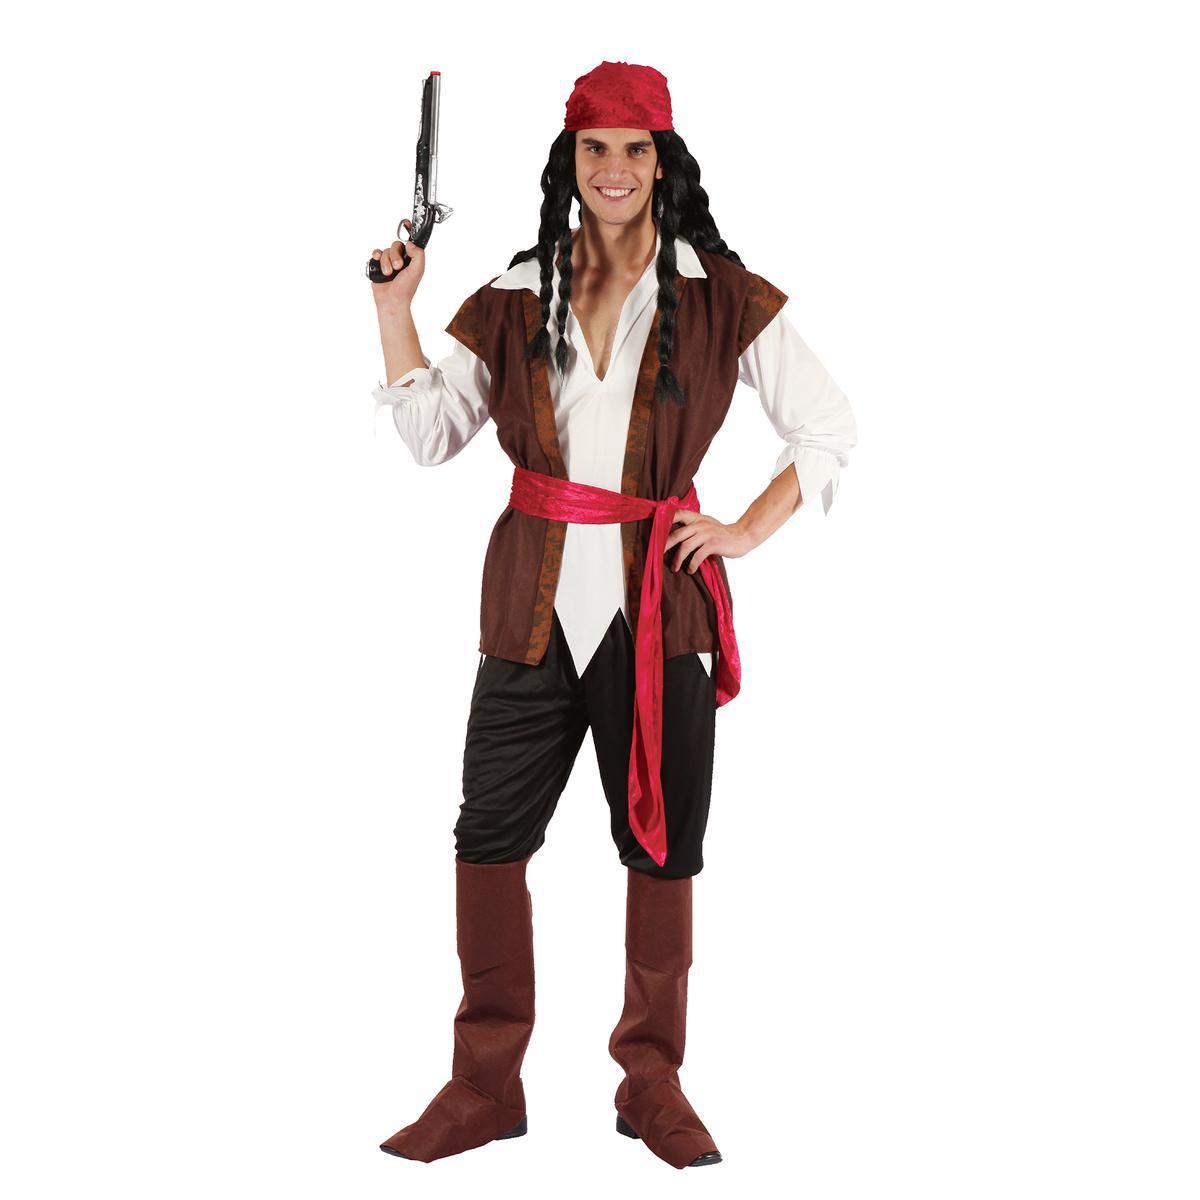 Déguisement homme pirate - Polyester - Taille adulte - Rouge, noir, blanc et marron